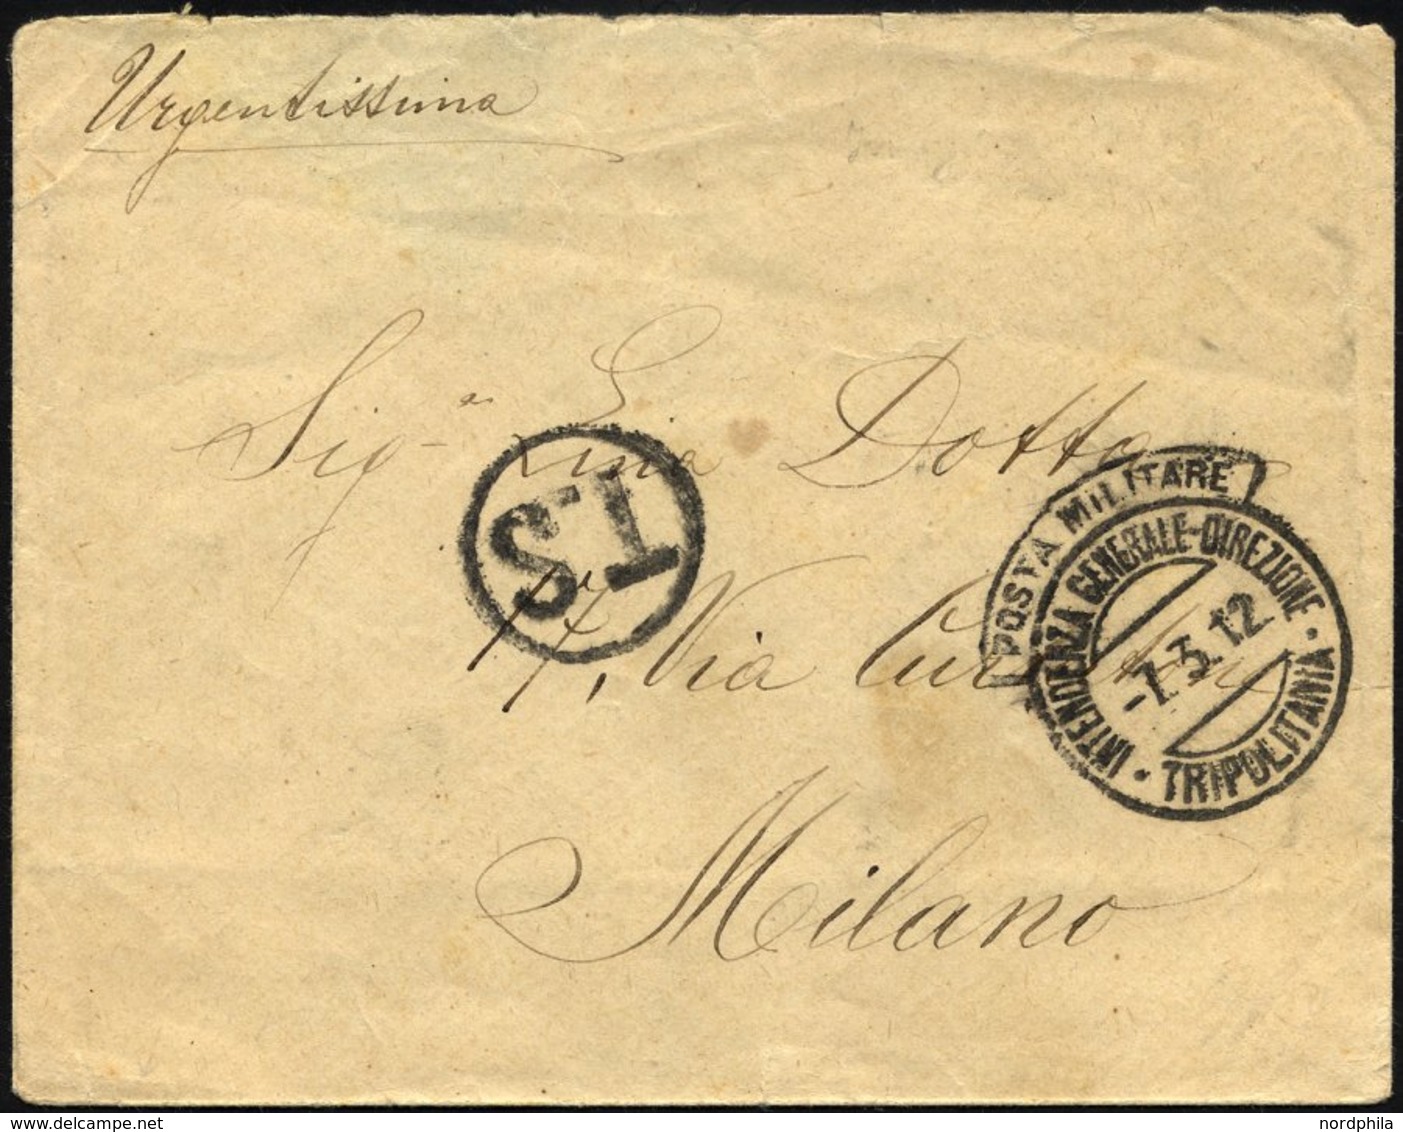 MILITÄRPOST 1912, K2 INTENDENZA GENERALE DIREZIONE Mit Haubenstempel POSTA MILITARE Auf Feldpostbrief Nach Mailand, Fein - Military Mail (PM)